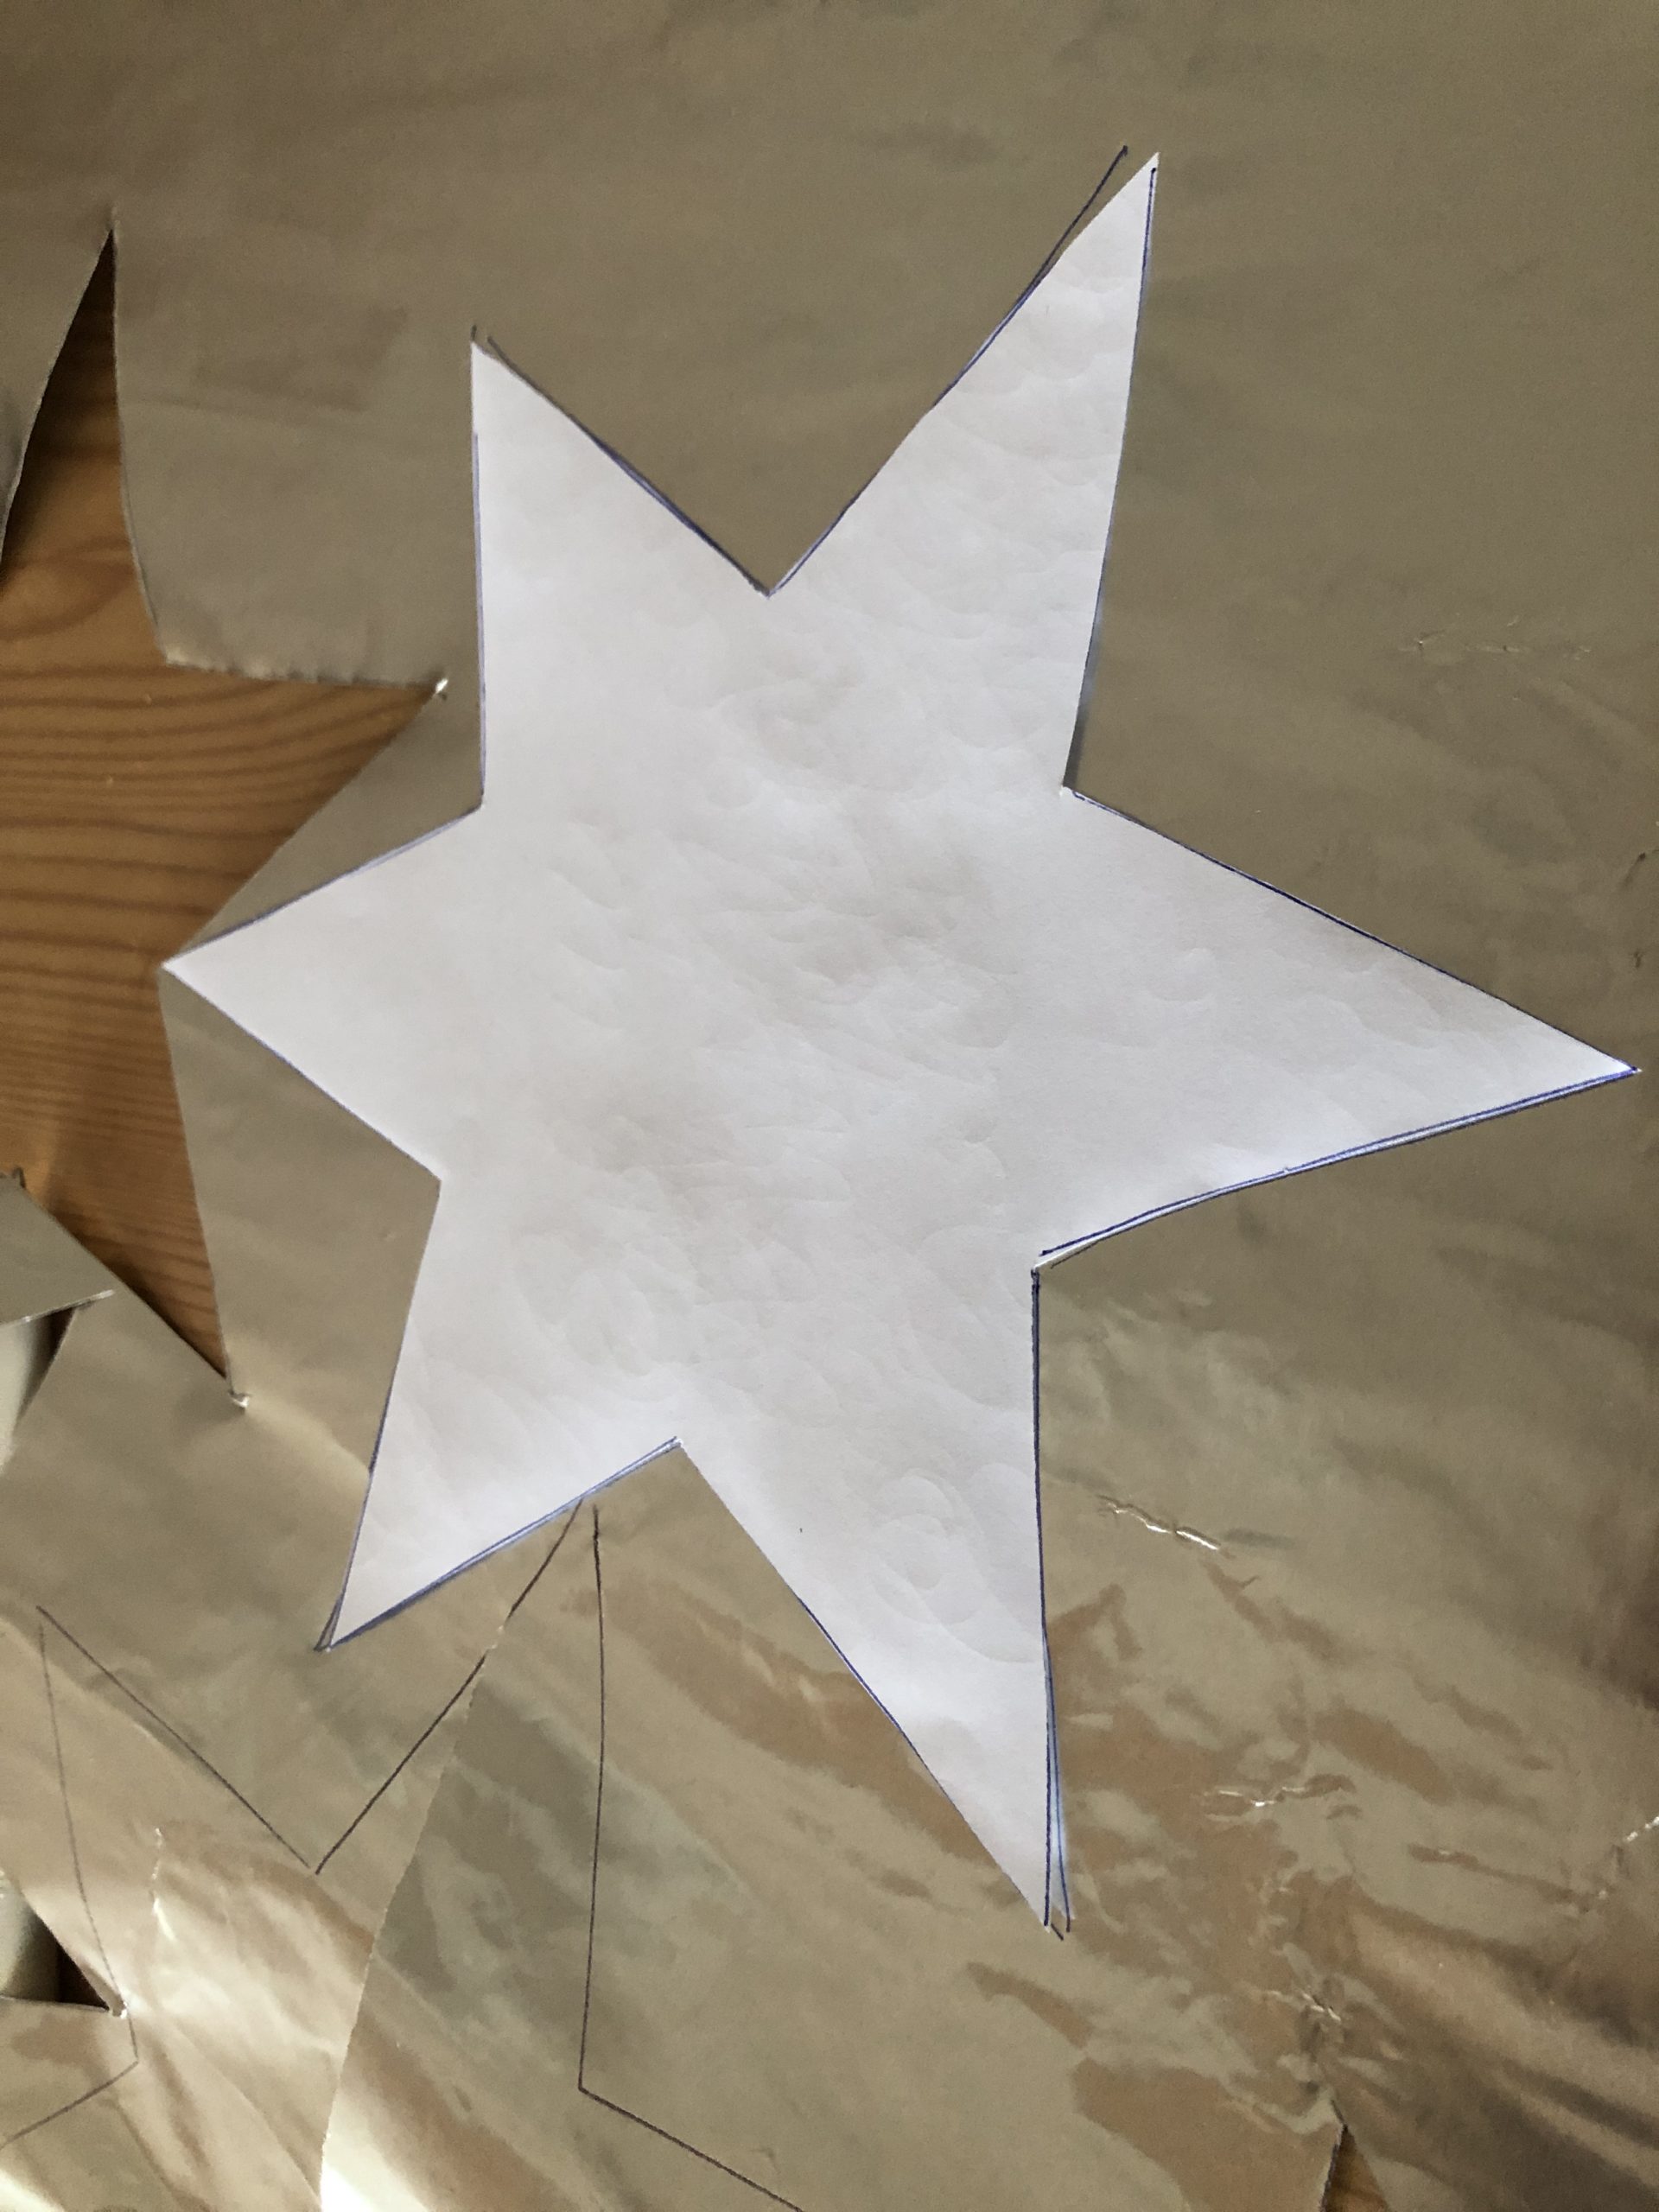 Bild zum Schritt 3 für das Bastel- und DIY-Abenteuer für Kinder: 'Übertragt nun die Sternschablone auf das Goldpapier.'